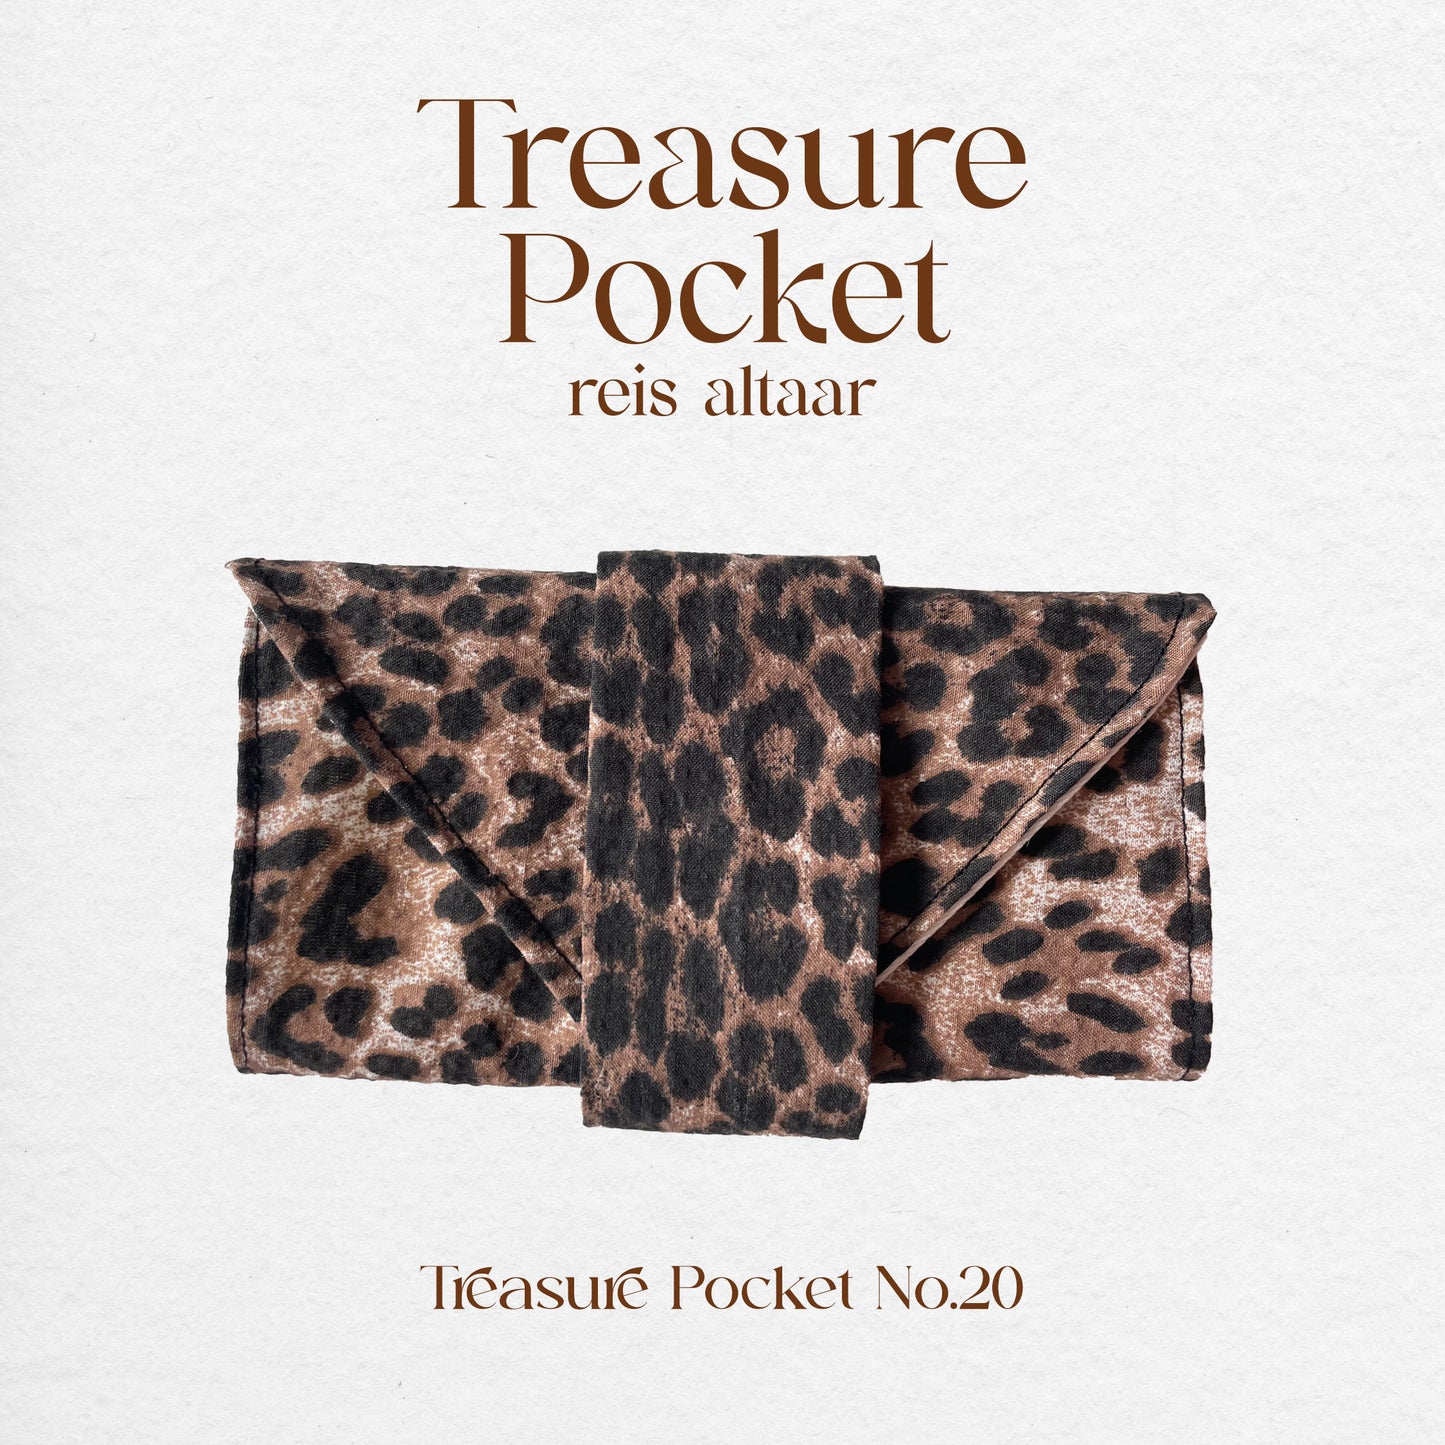 Treasure Pocket No.20